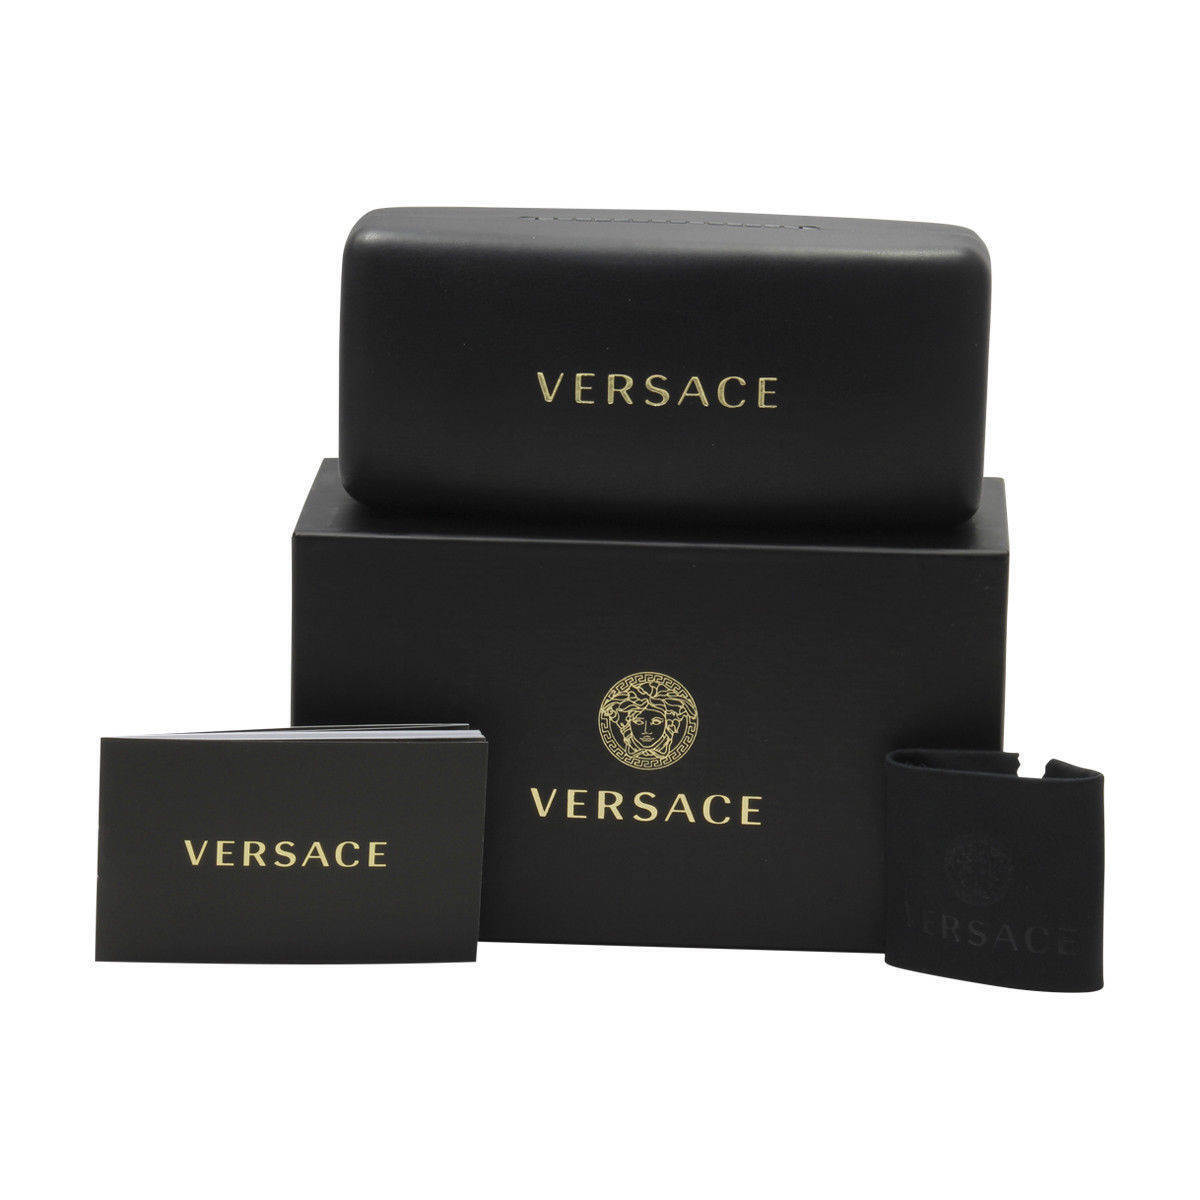 Versace VE3334-108-55  New Eyeglasses